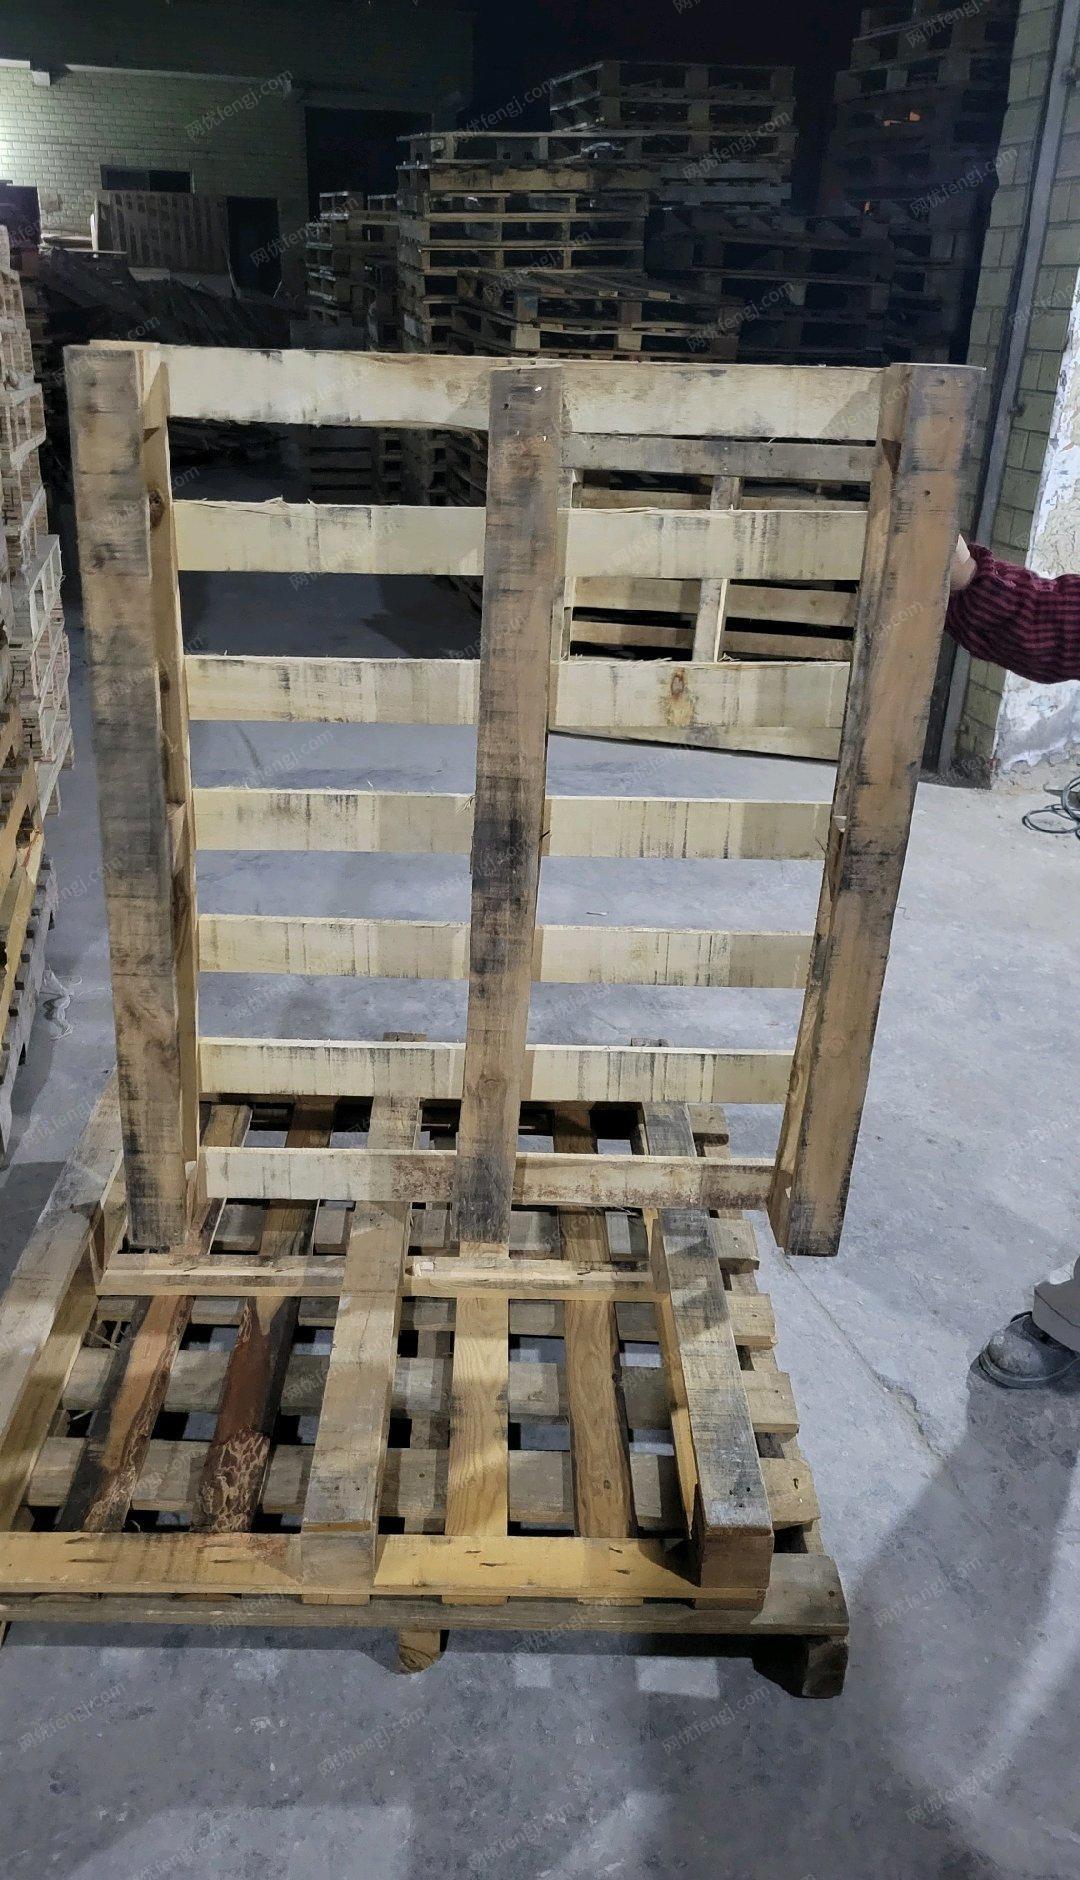 重庆江北区出售木托盘塑料托盘包装箱叉车